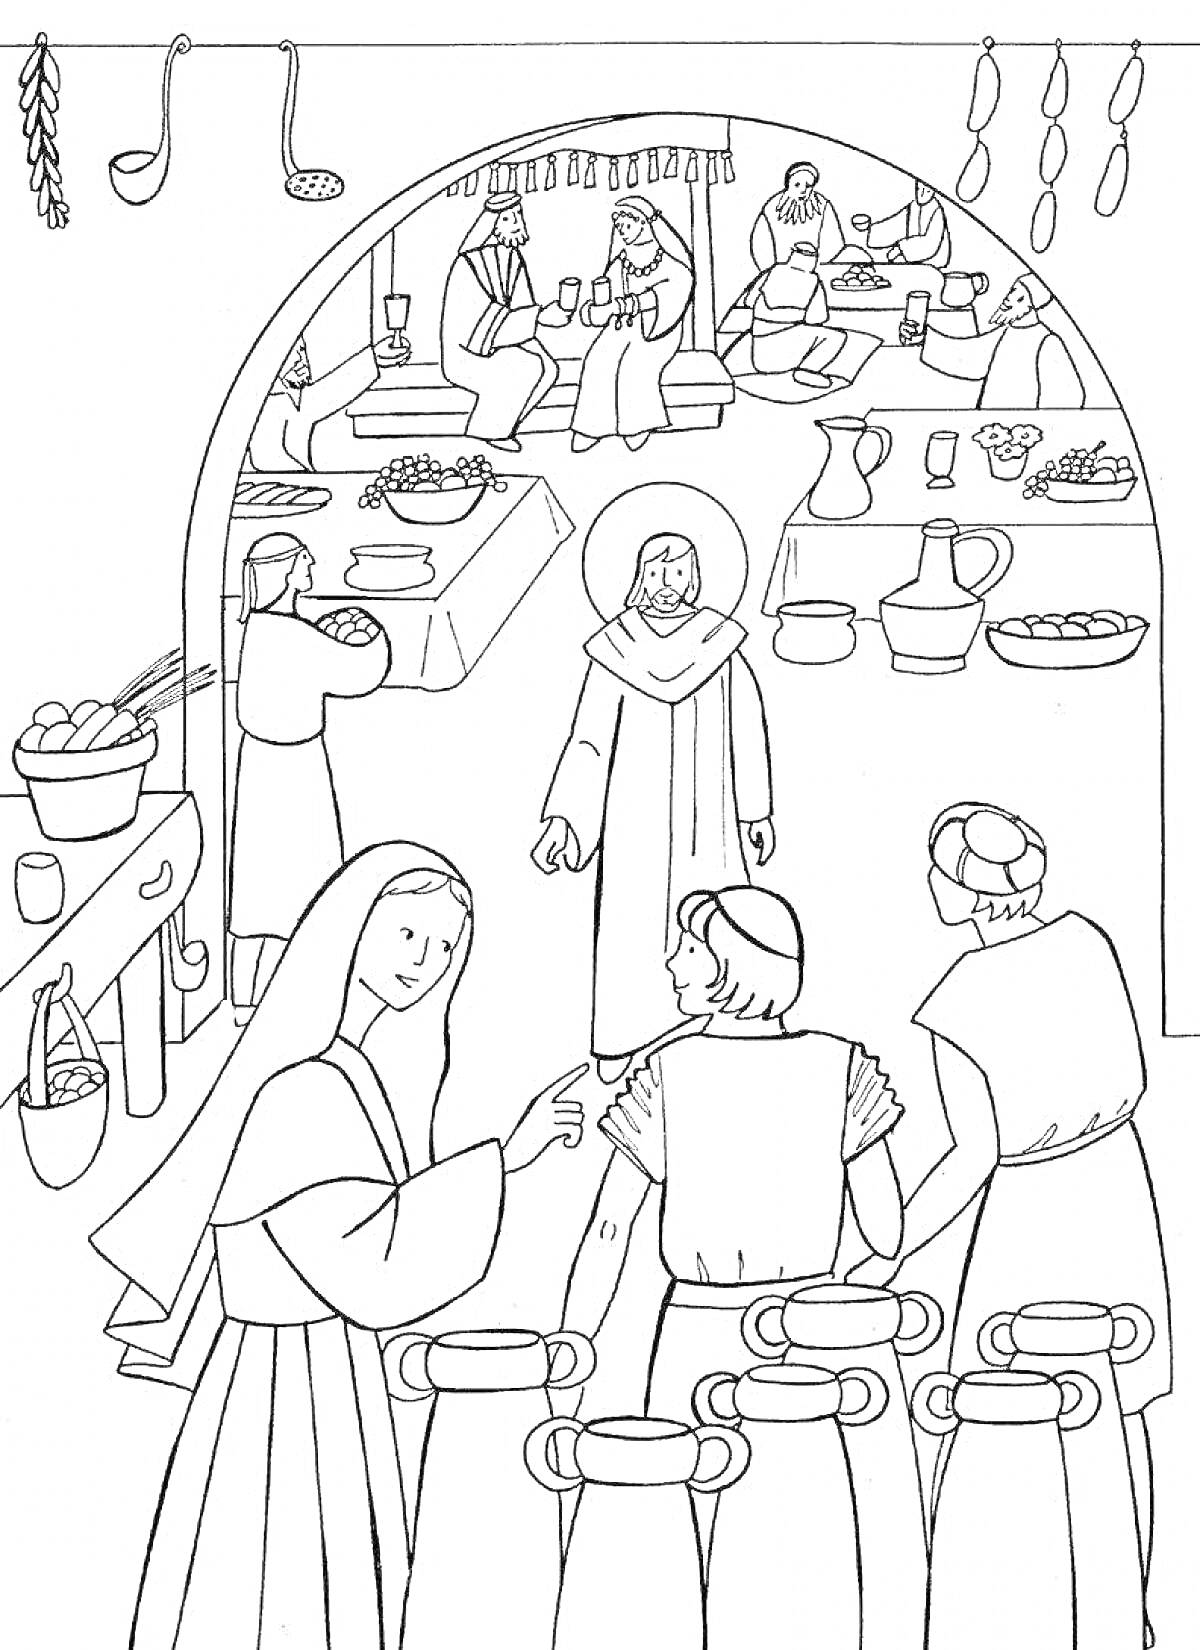 РаскраскаПир в теремных палатах с гостями за столами, женщинами около кувшинов, сосудов и еды на столах в интерьере помещения